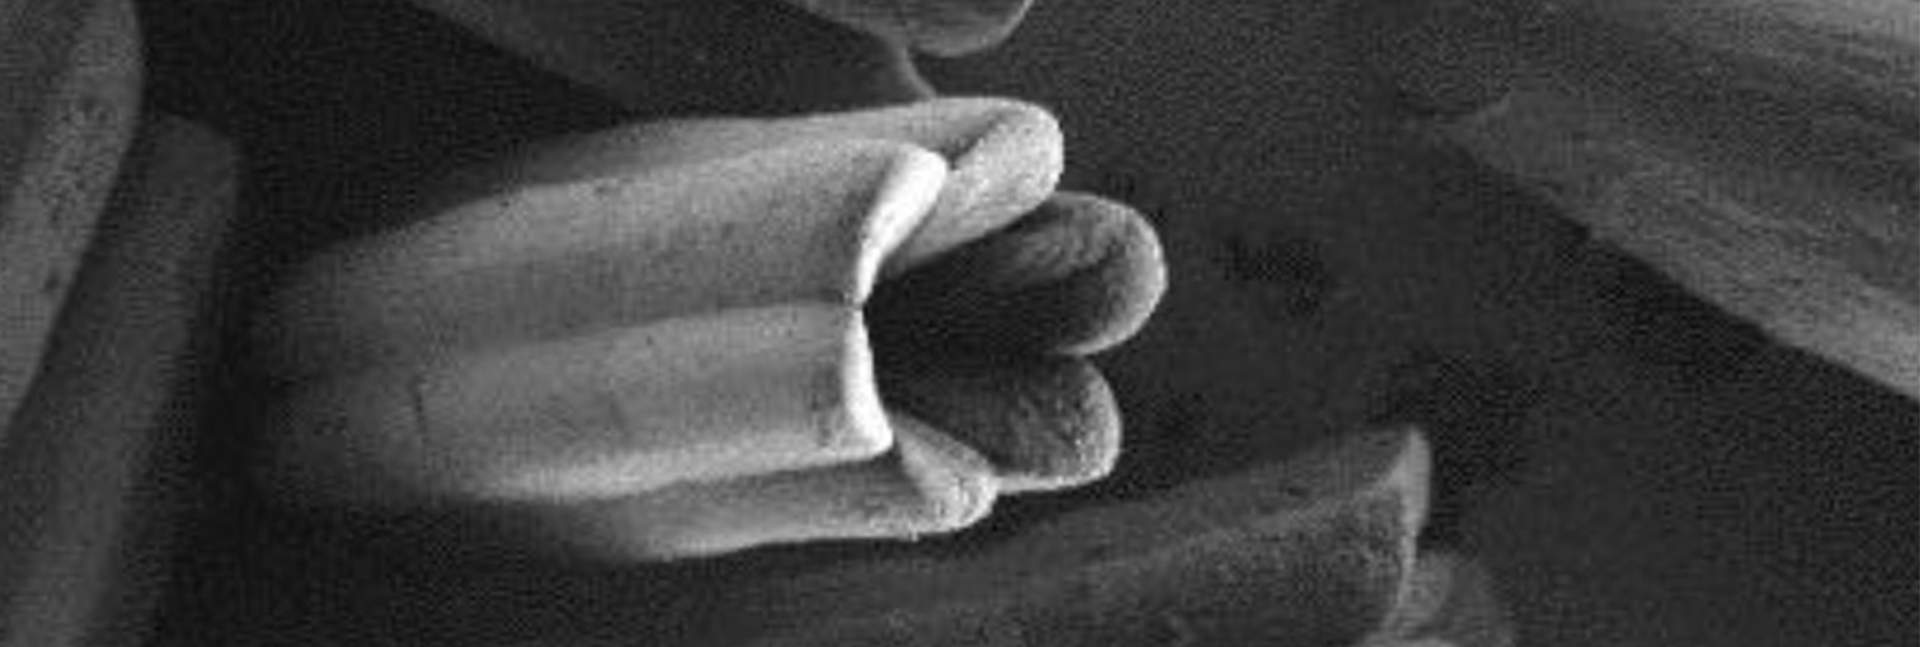 הגבישים החלולים תחת מיקרוסקופ אלקטרונים סורק